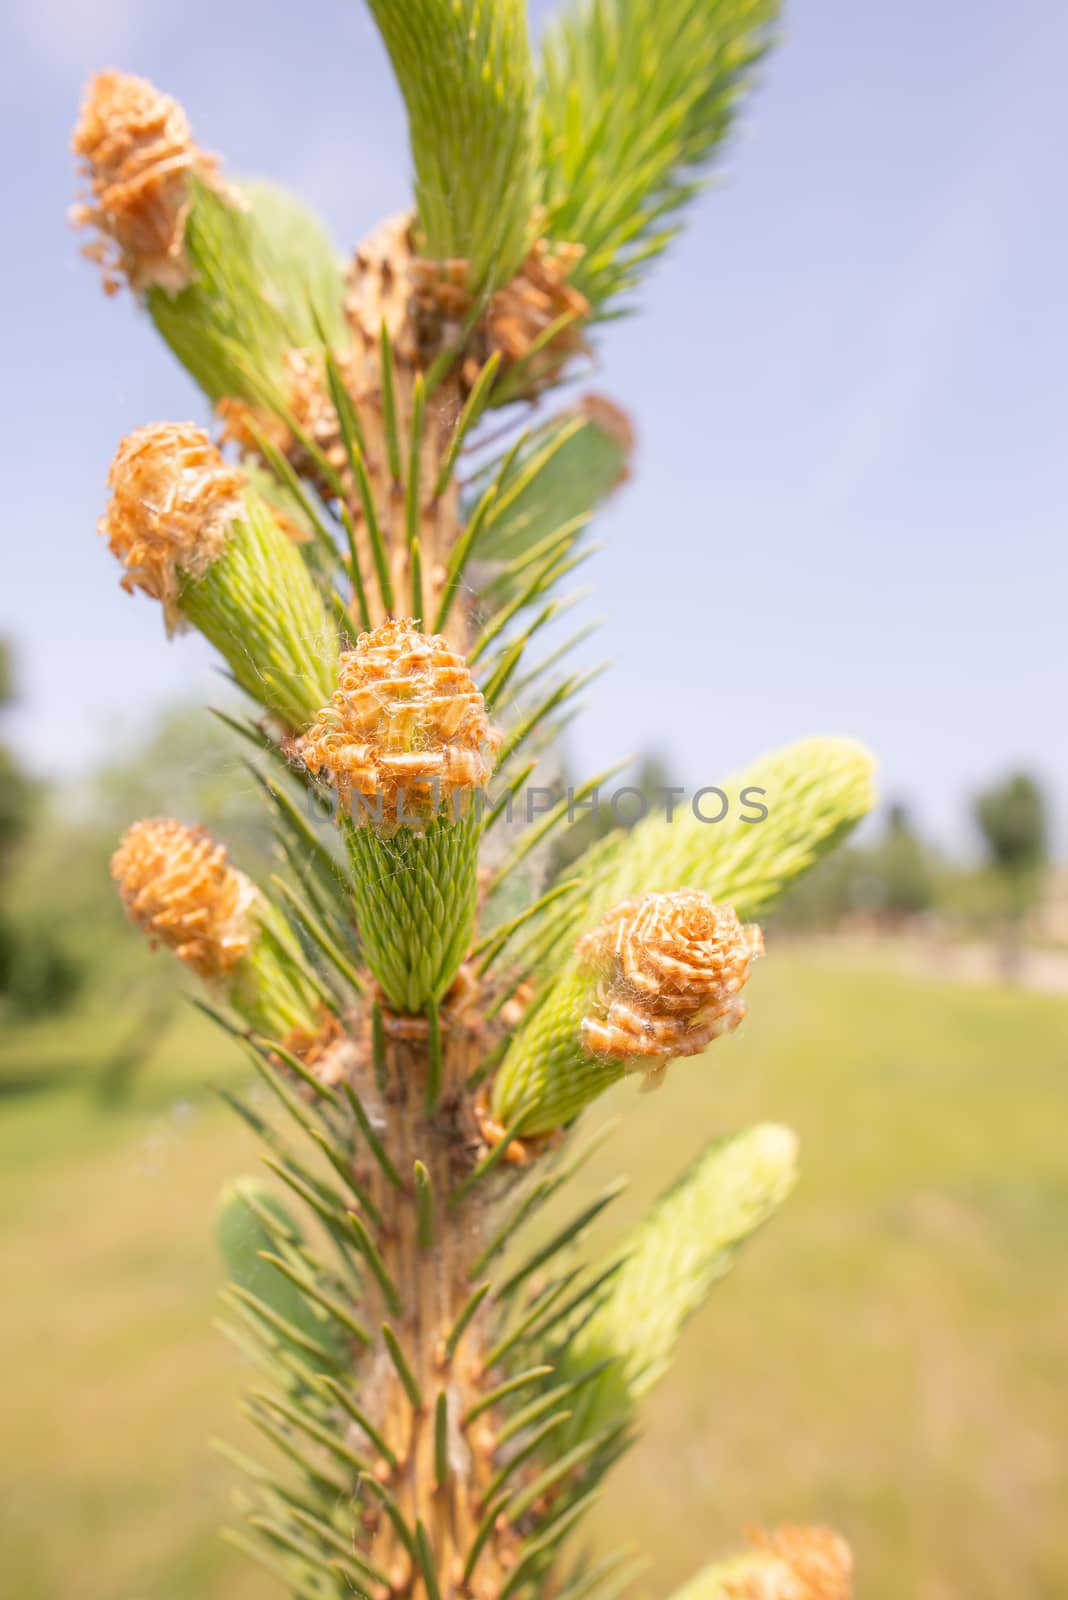 Pine tree female flower by MaxalTamor